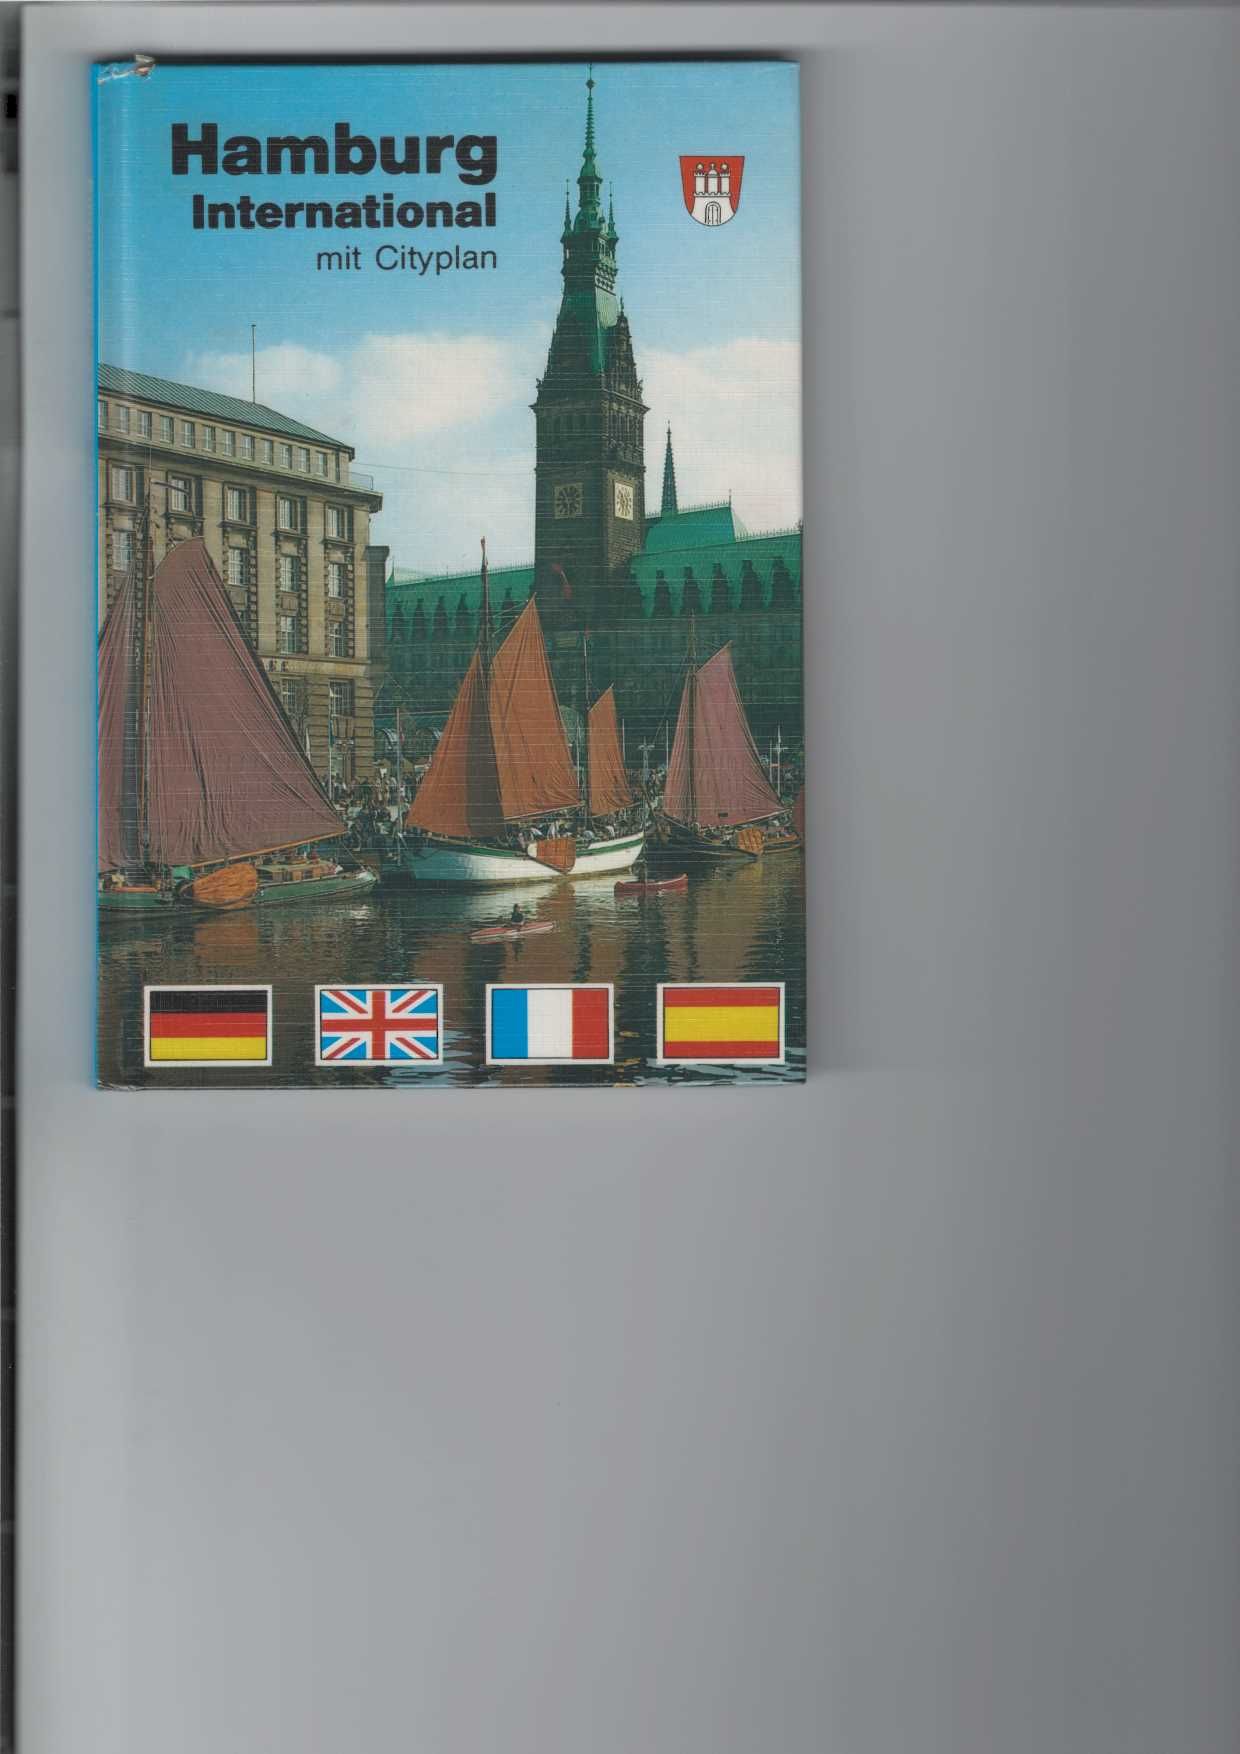 Hamburg International mit Cityplan. Farbiger Bildband. Viersprachig: deutsch, englisch, französisch und spanisch.